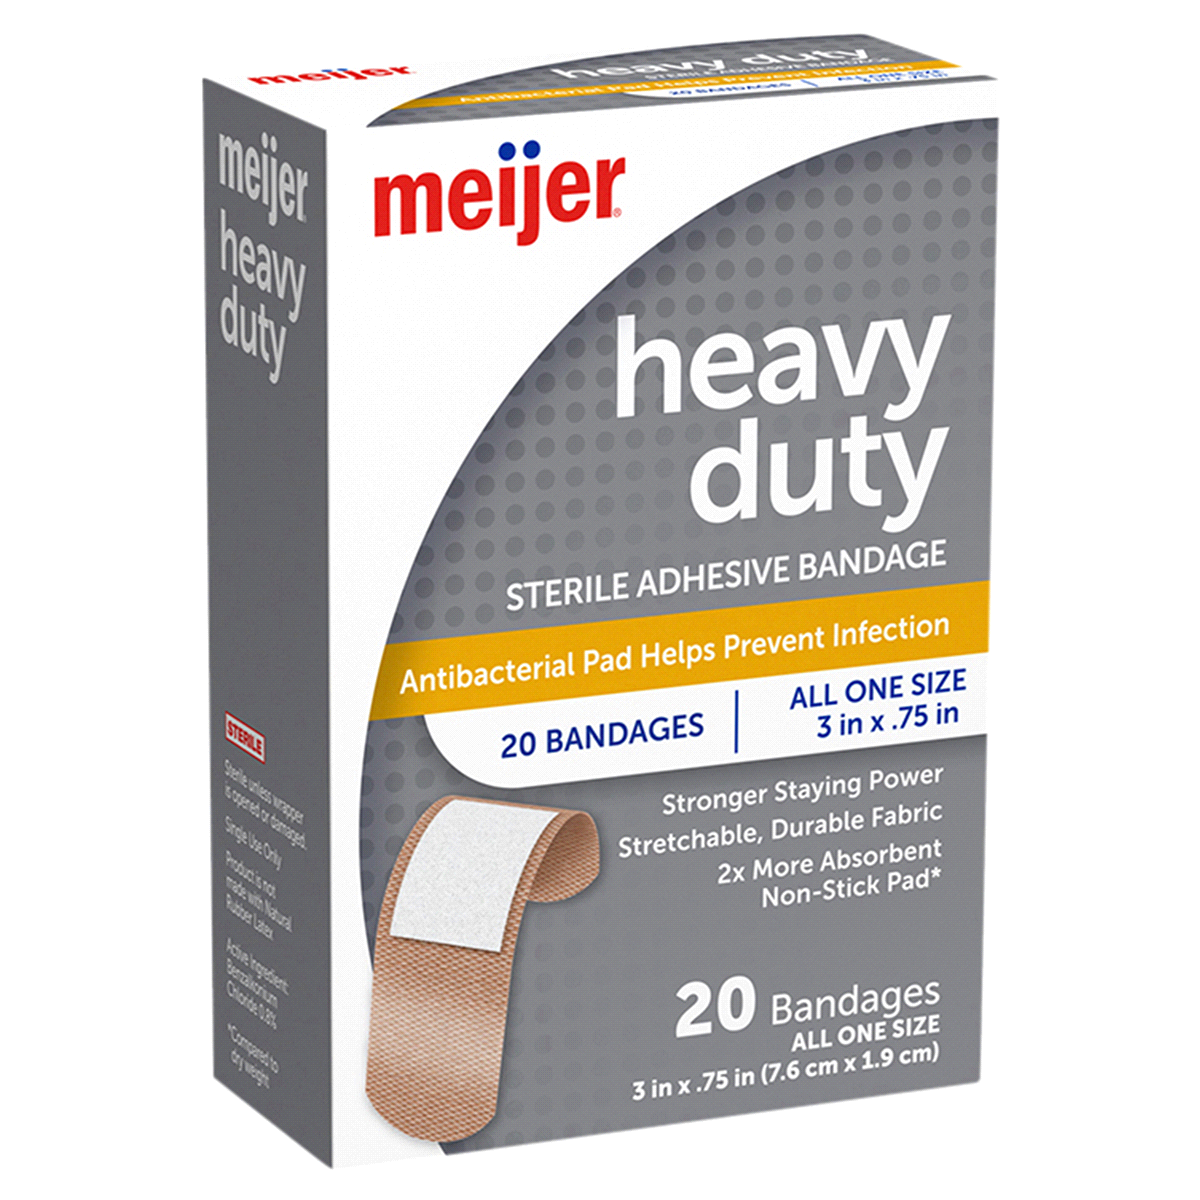 slide 9 of 25, Meijer Heavy Duty Adhesive Bandages, Antibacterial, 20 ct